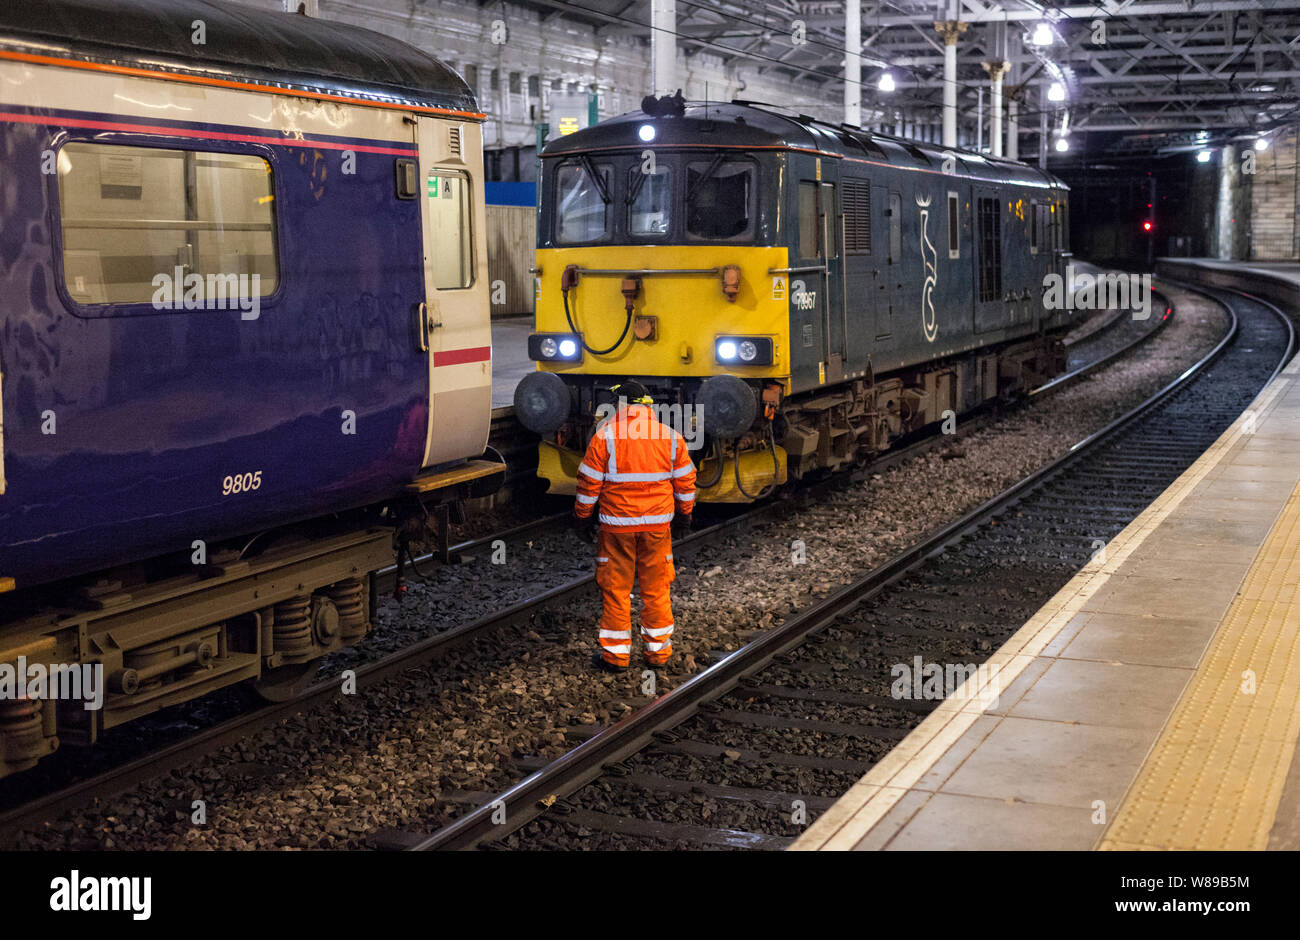 Les directeurs liées sur le conducteur de la locomotive 0443 Édimbourg - Aberdeen partie de la Caledonian sleeper 2116 train de Londres Euston Banque D'Images